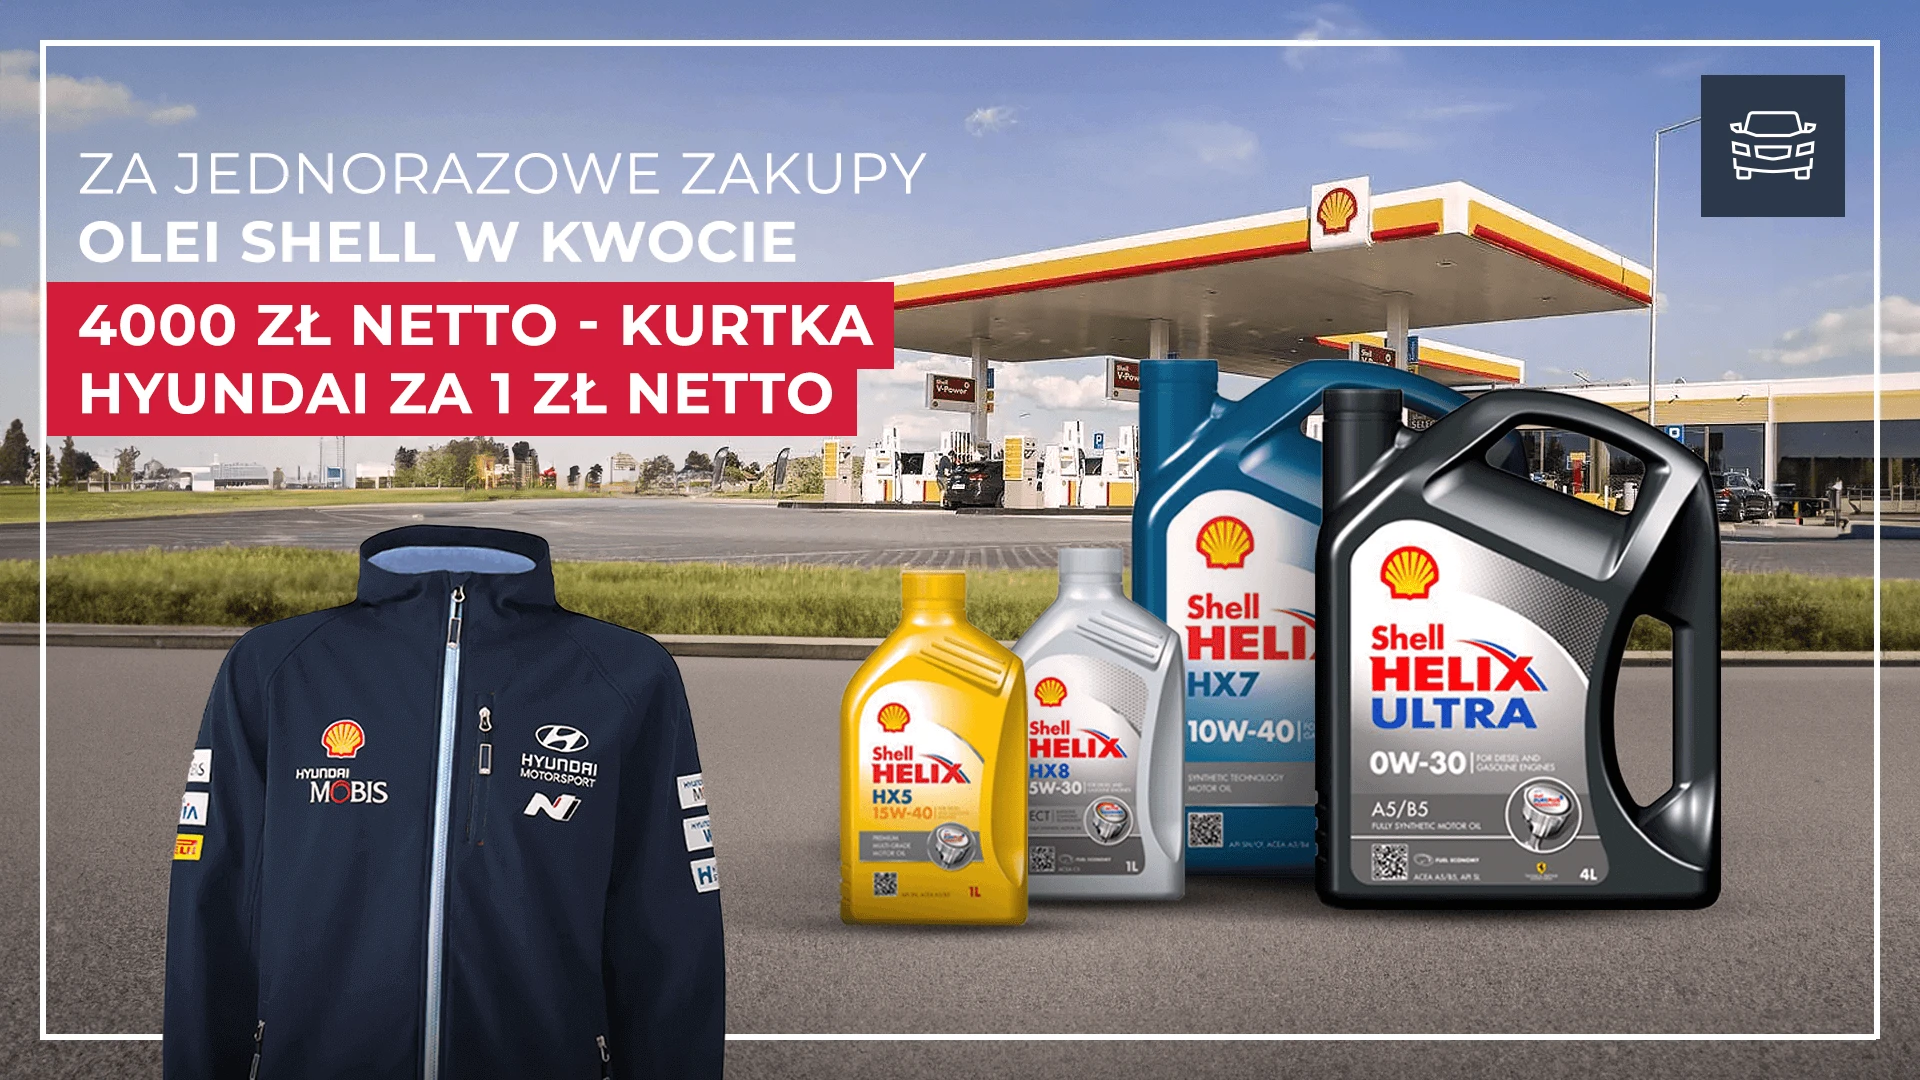 Kup oleje Shell i wygraj kurtkę Hyundai WRC!